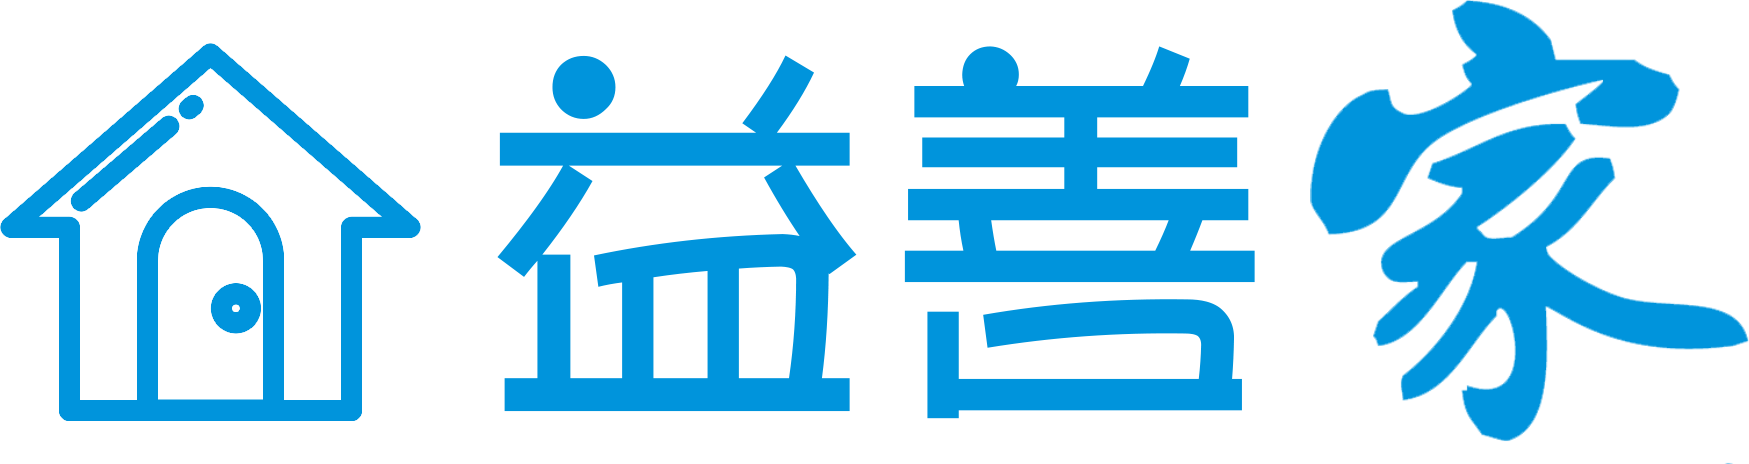 home-hkewc-logo-v3